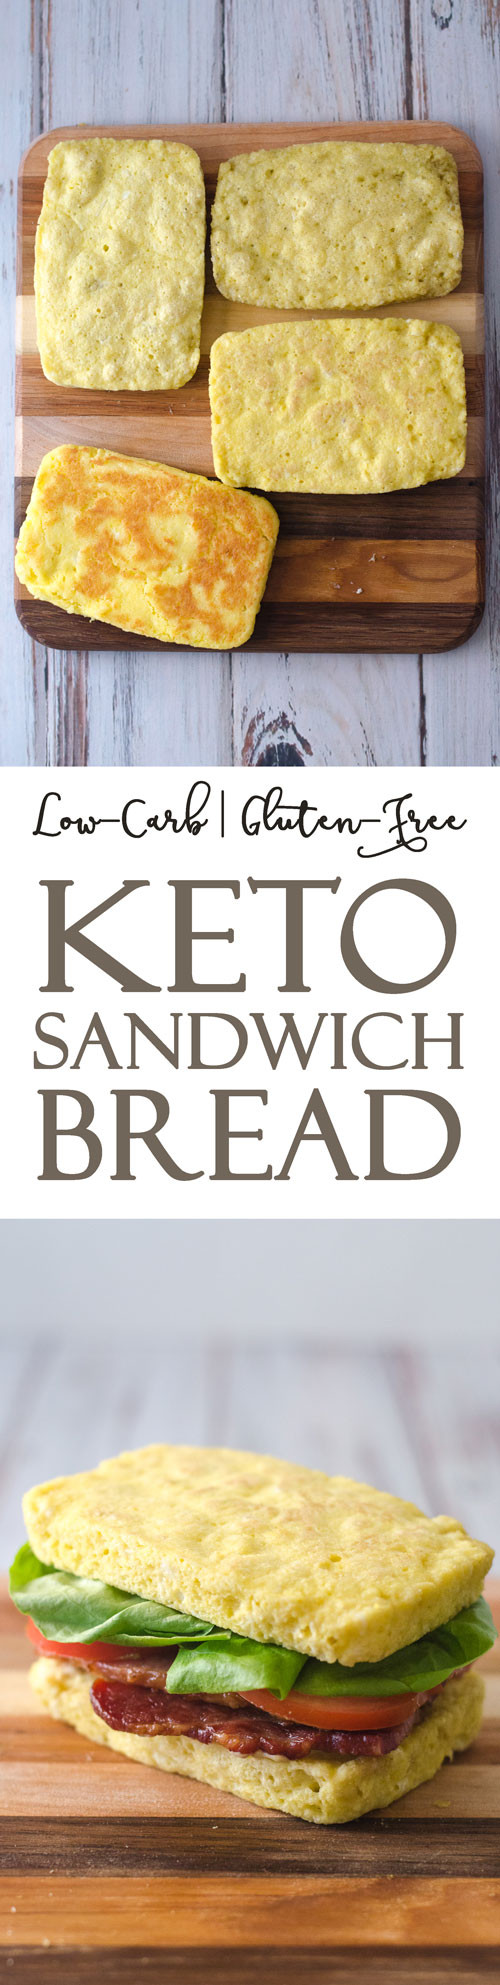 Keto Sandwich Bread Microwave
 Keto Microwave Sandwich Bread Paleo Gluten Free The